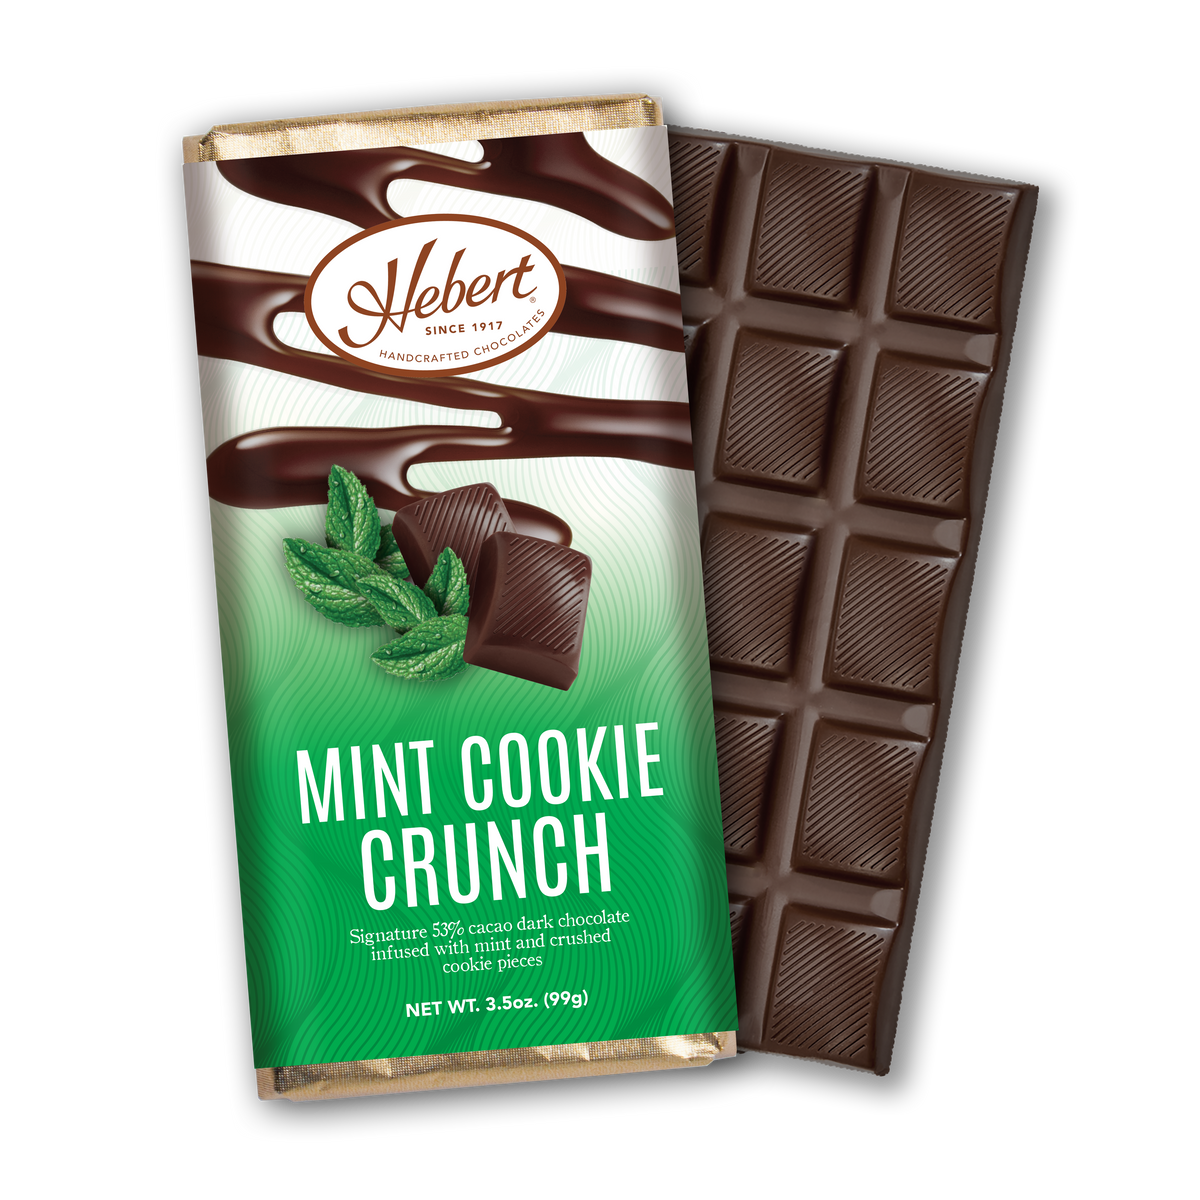 Mint Cookie Crunch Dark Chocolate Bar (2.15oz) — Hebert Candies